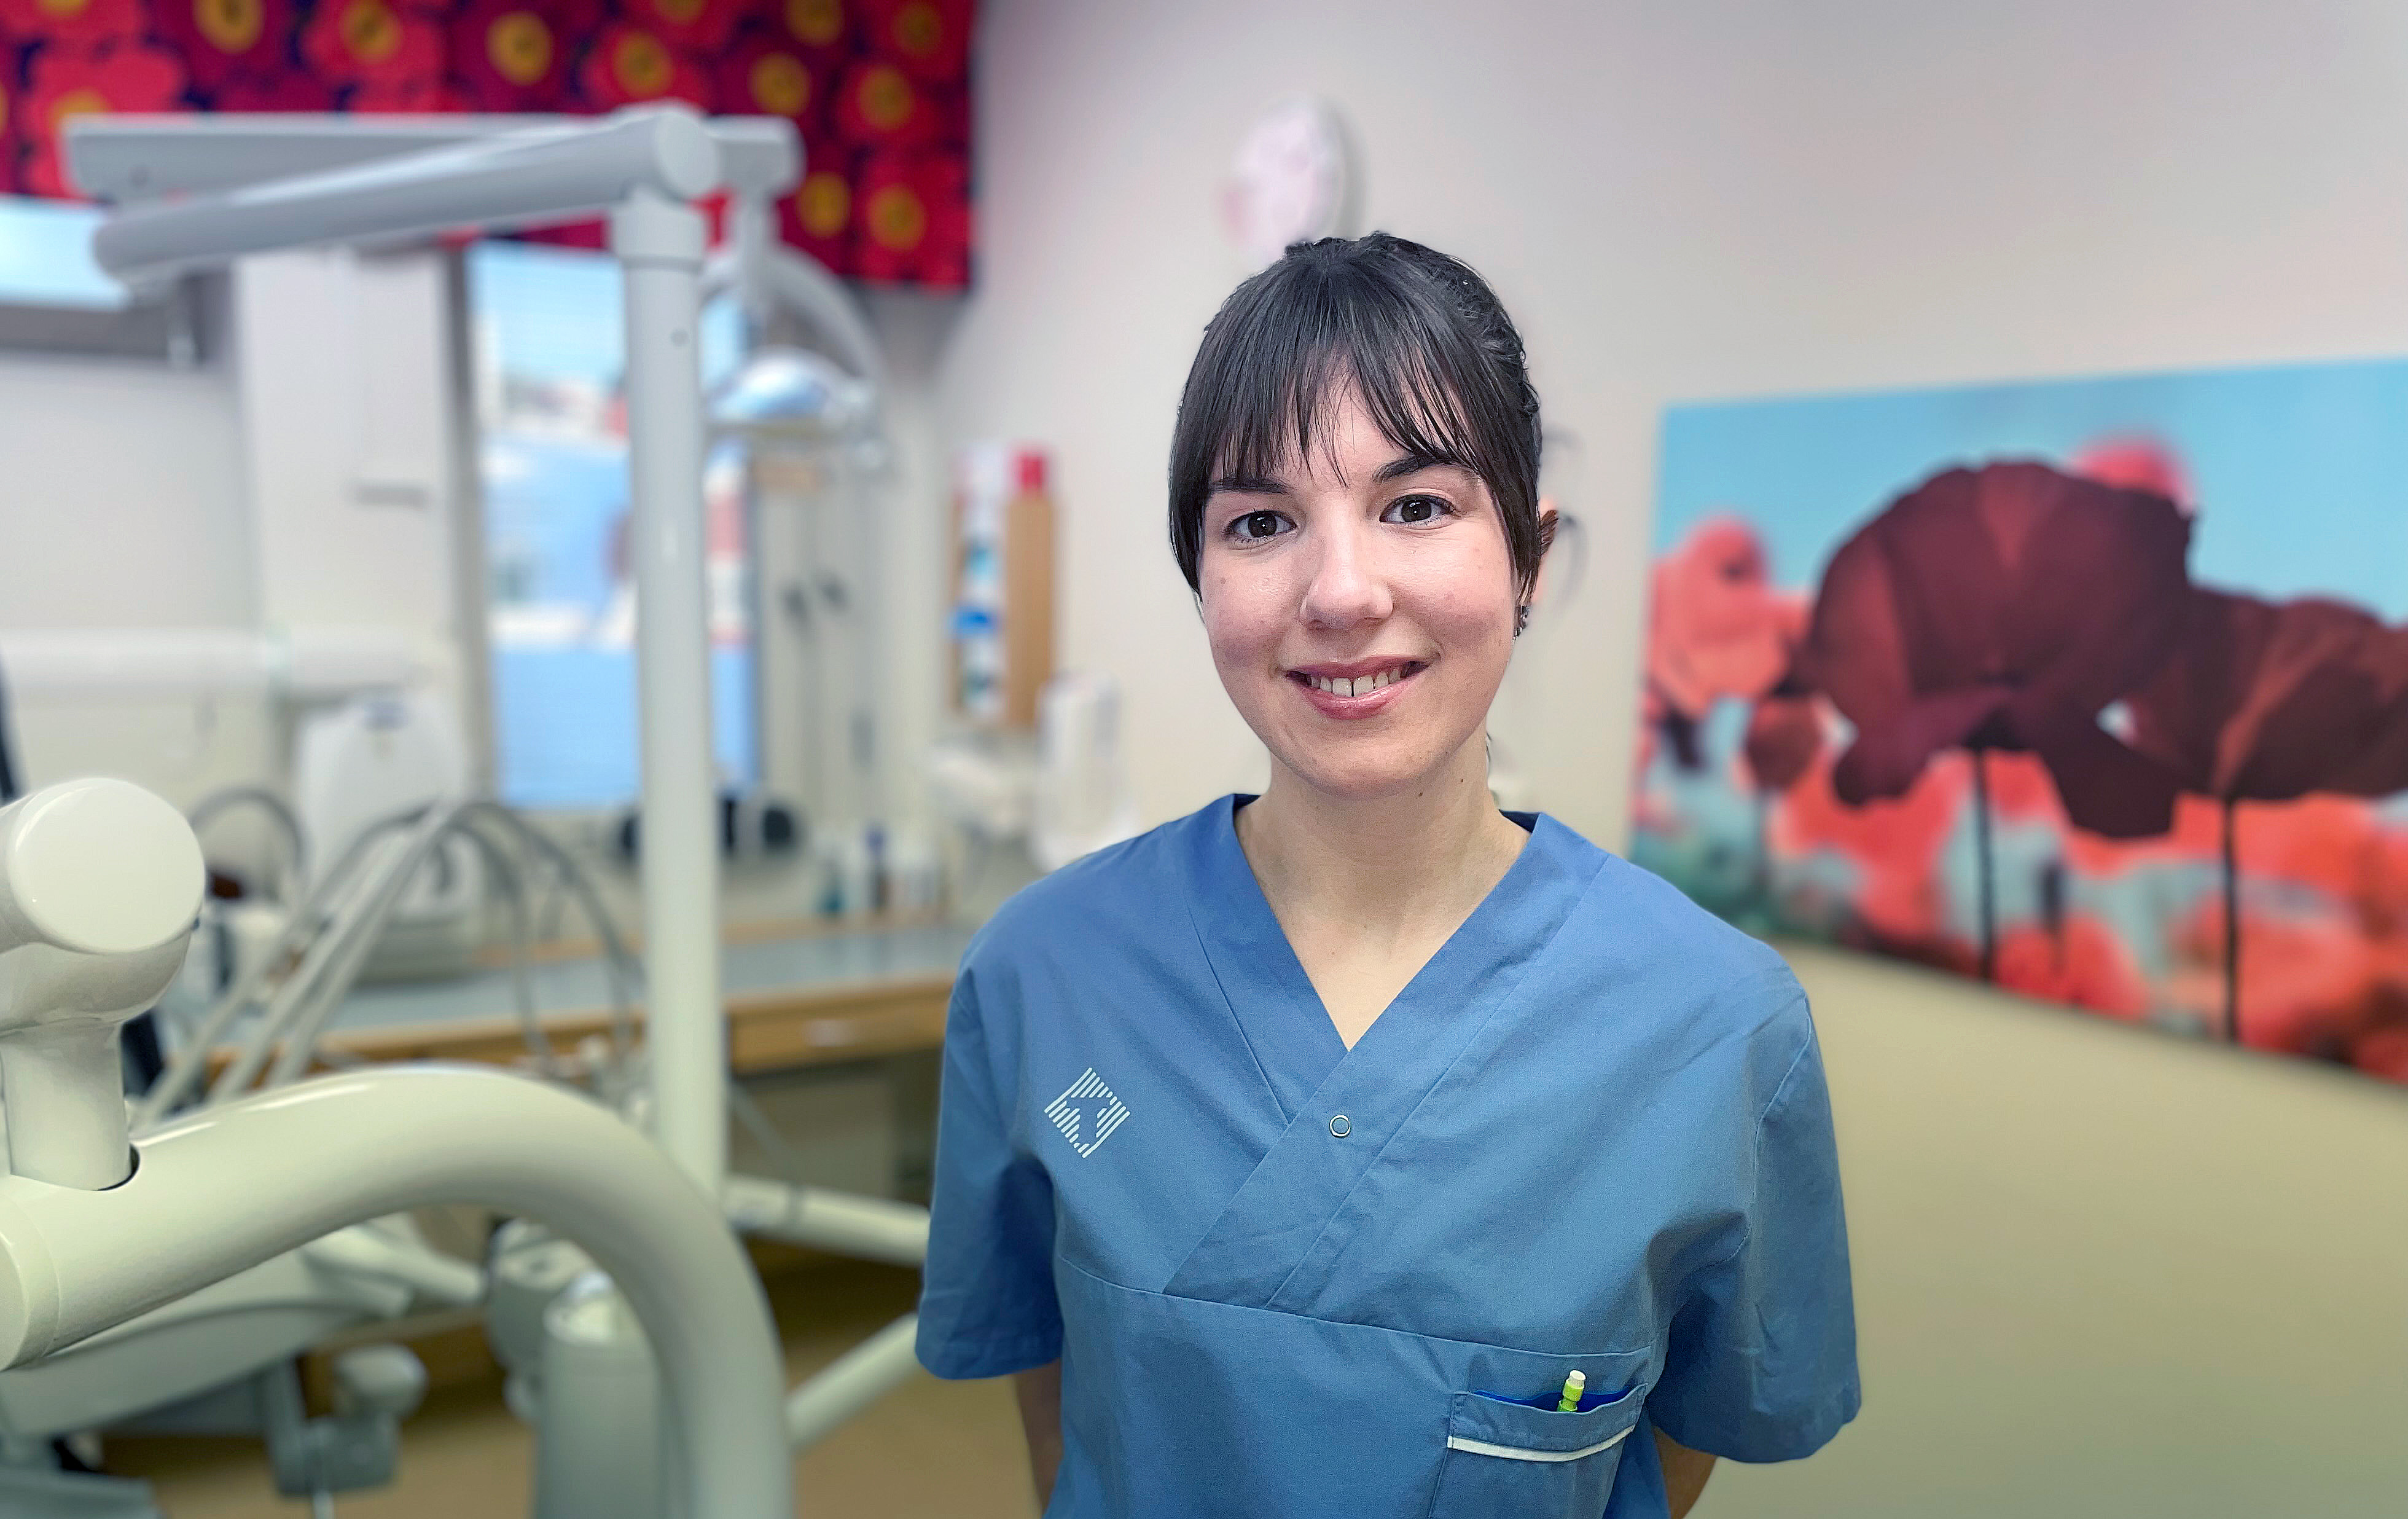 Sabina Jagebo har gått Folktandvården Västernorrlands lärlingsprogram - nu vill hon bli tandläkare.